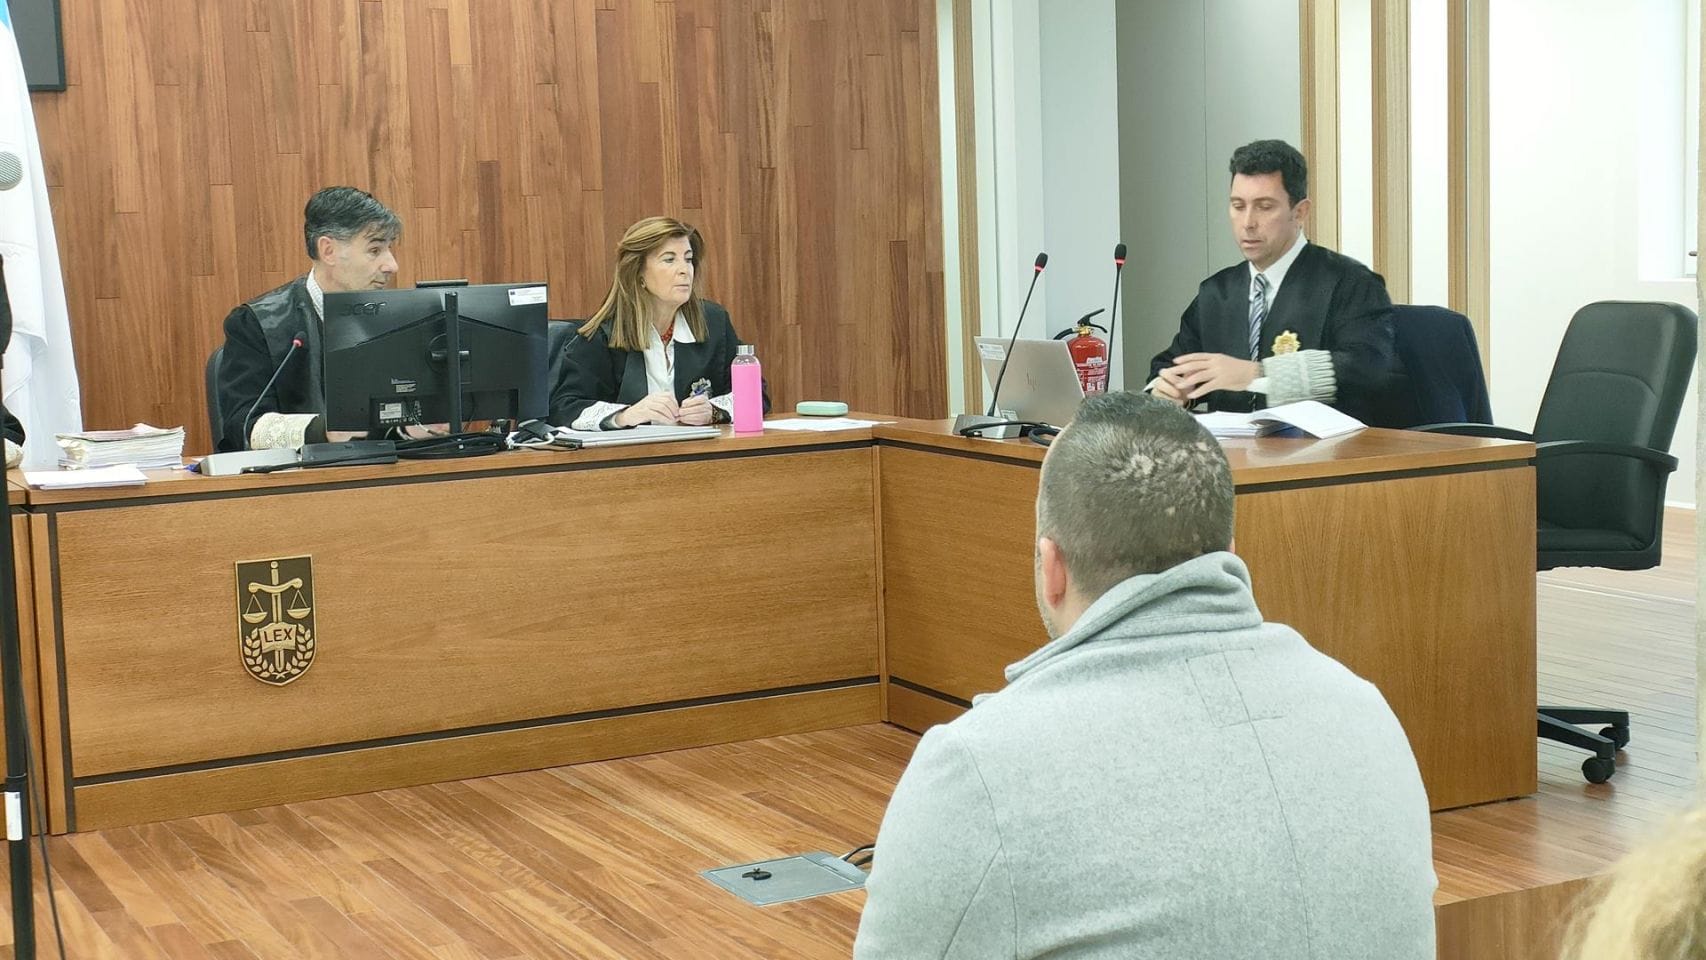 Juicio contra un acusado de agredir sexualmente a la hija menor de su pareja, y de elaboración de pornografía infantil, para quien la Fiscalía pide penas que suman 25 años de cárcel.